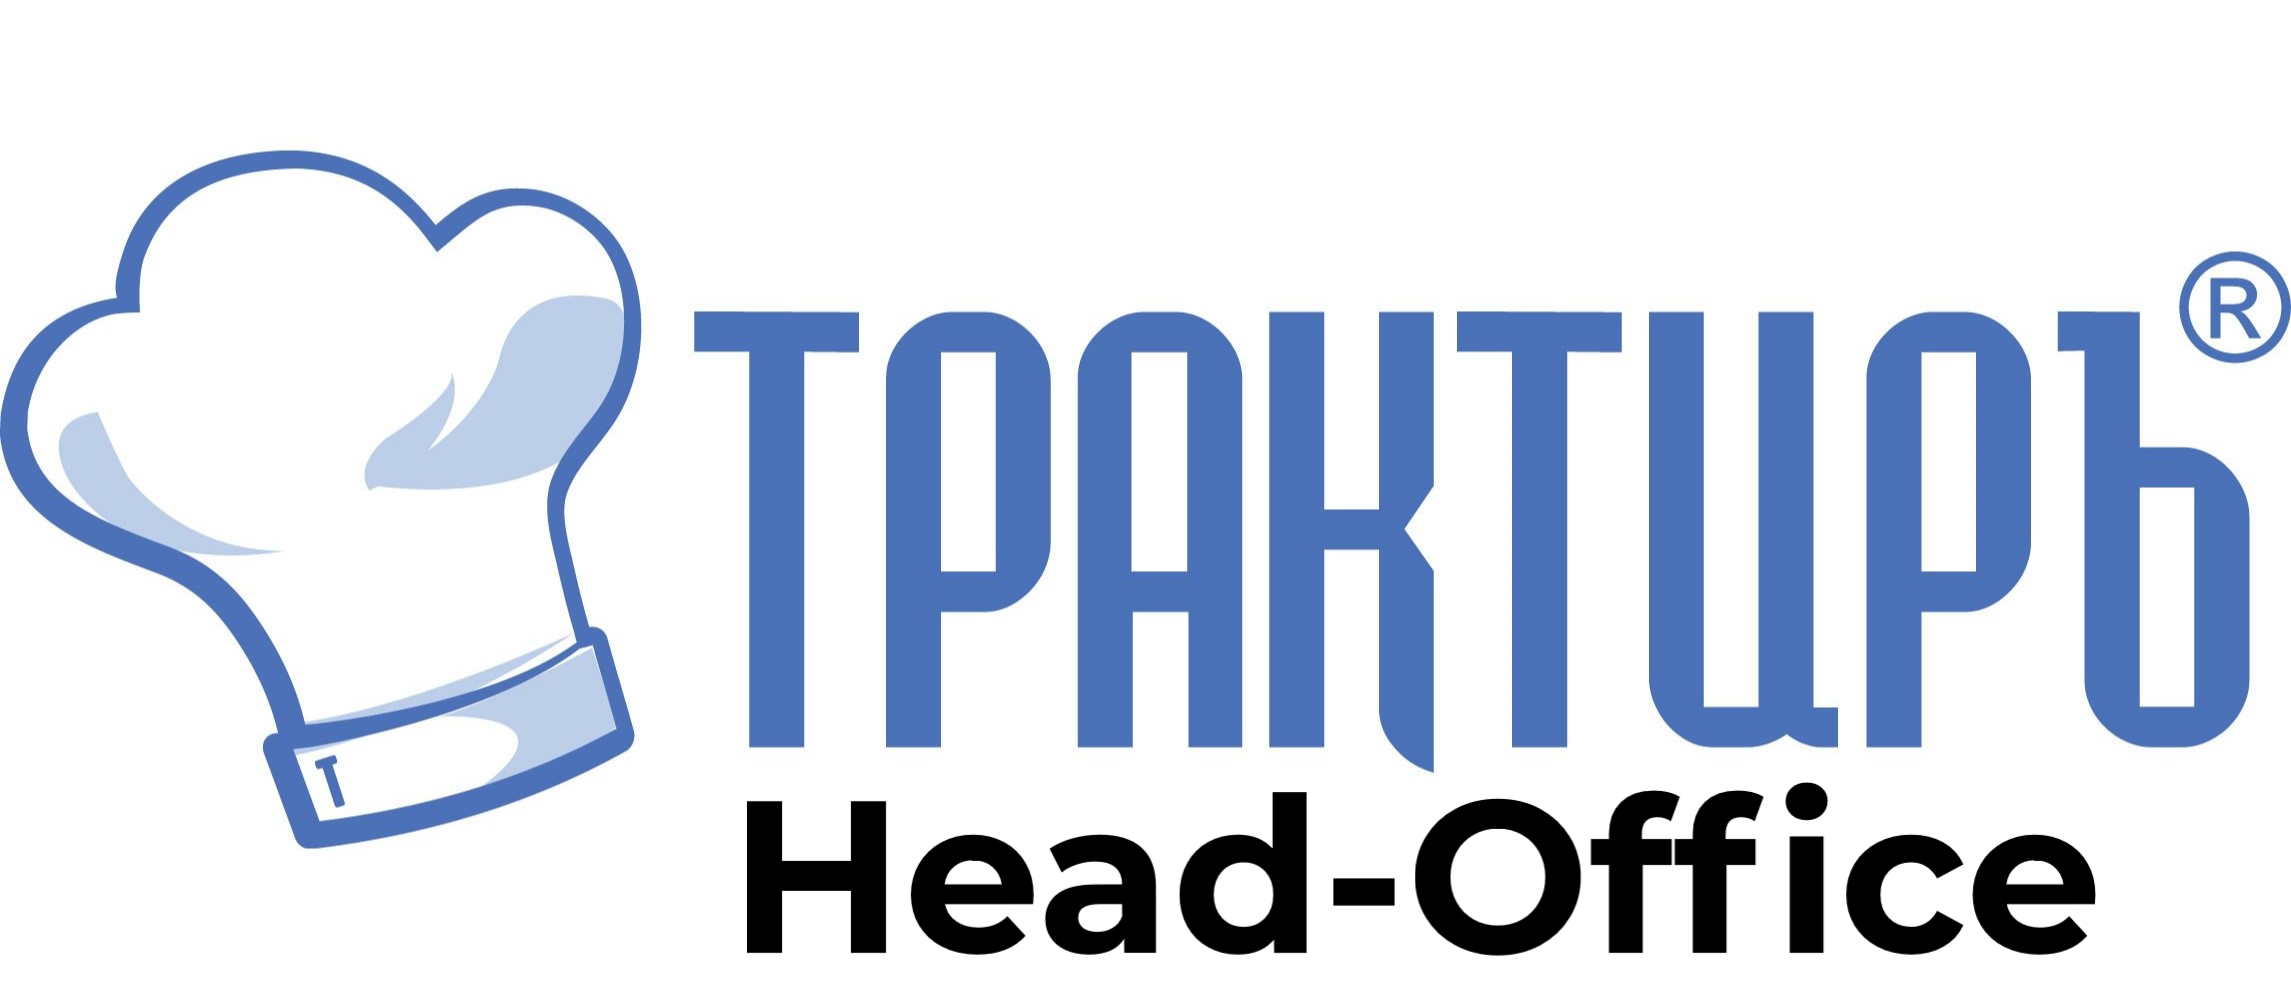 Трактиръ: Head-Office в Южно-Сахалинске